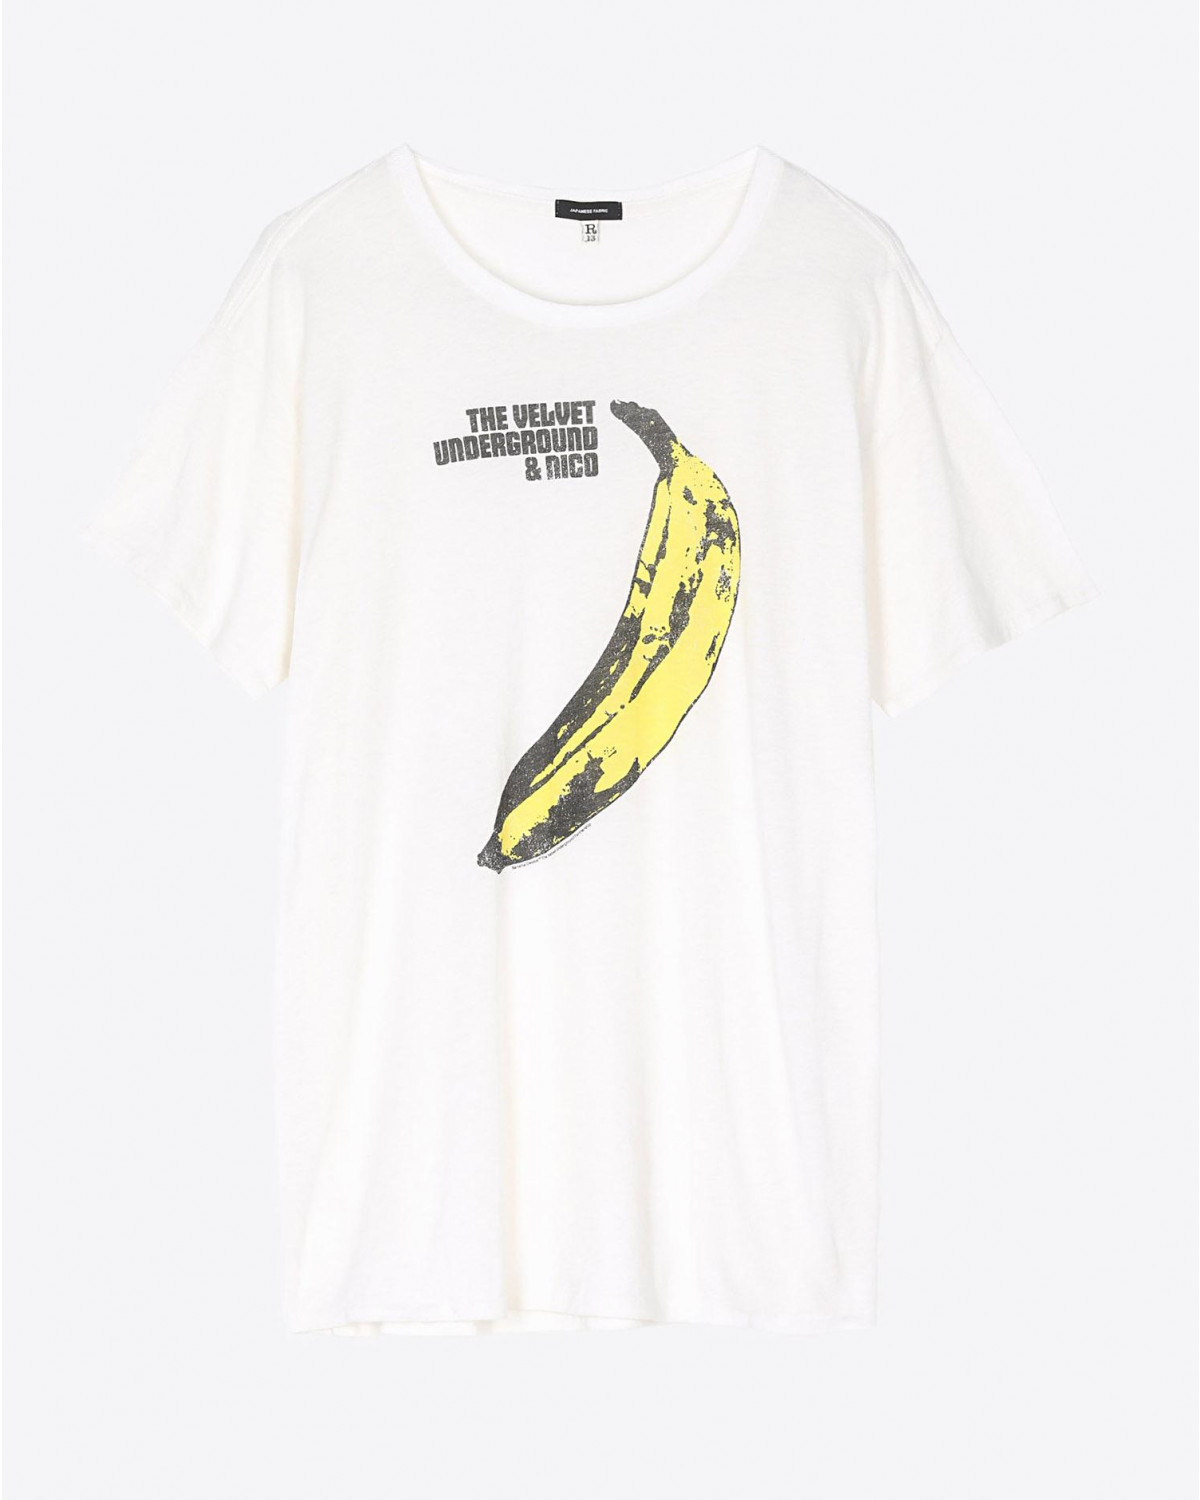 Tee Shirt R13 Denim Collection Velvet Underground Banana Boy T - Ecru
